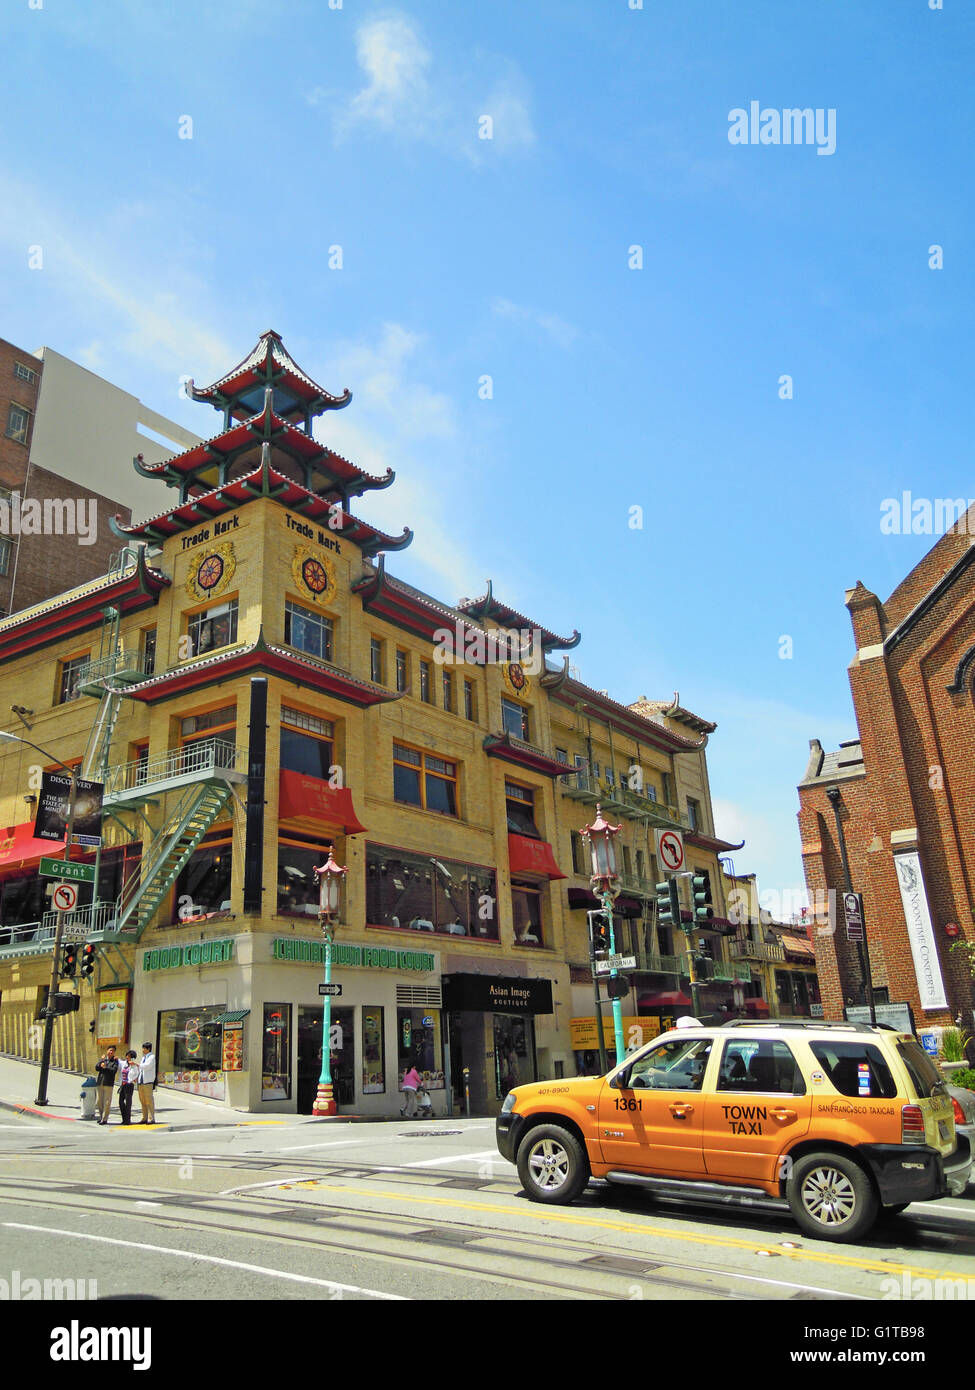 San Francisco: con el horizonte de edificios orientales de Chinatown, el barrio chino más antiguo de América del Norte y la comunidad china más grande fuera de Asia Foto de stock